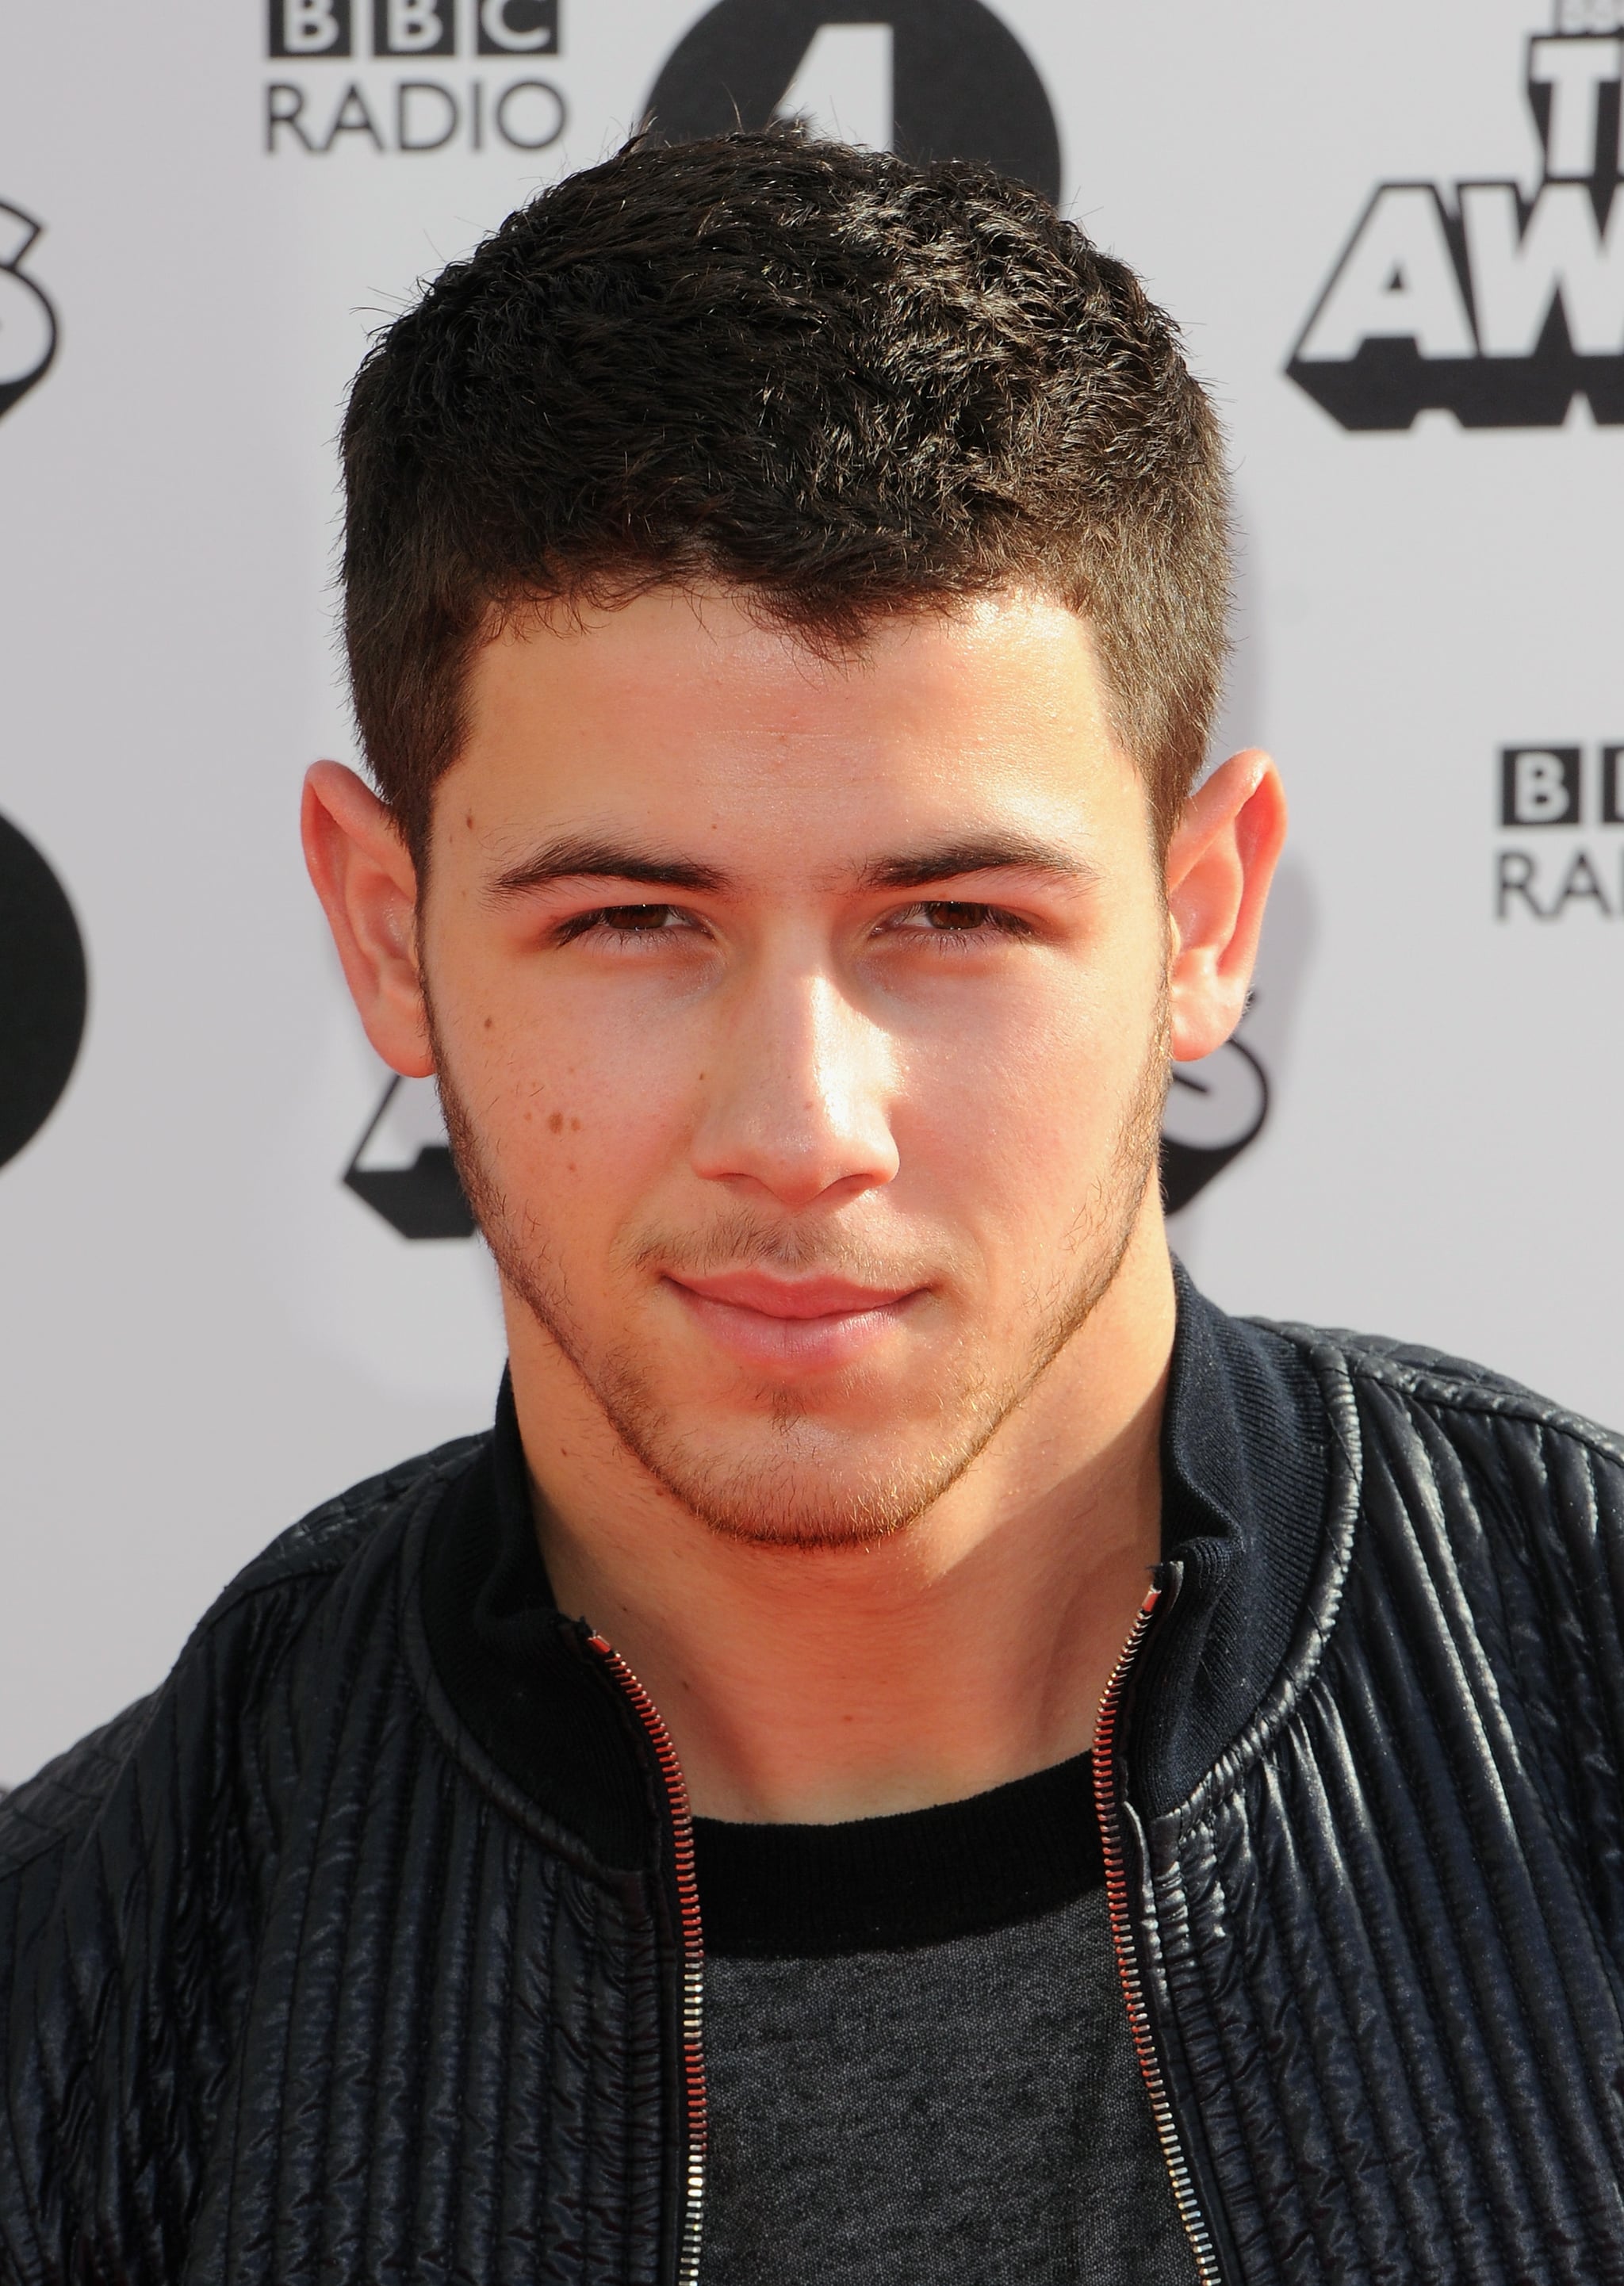 Nick Jonas | Disney Wiki | Fandom